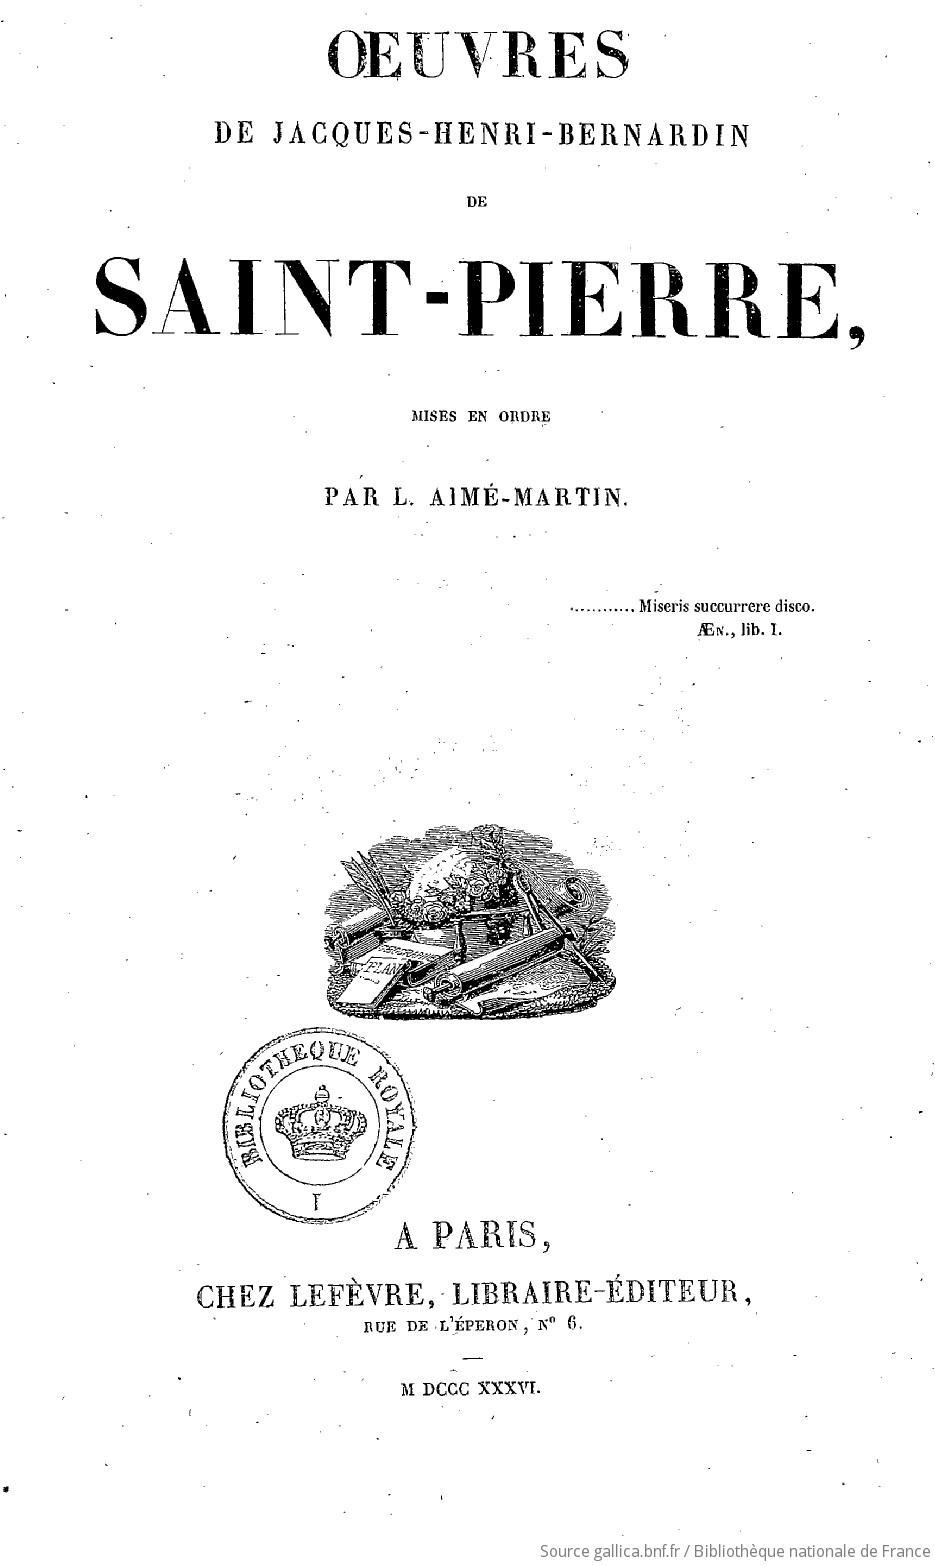 Oeuvres de Jacques-Henri-Bernardin de Saint-Pierre / [Bernardin de Saint-Pierre] ; mises en ordre par L. Aimé-Martin